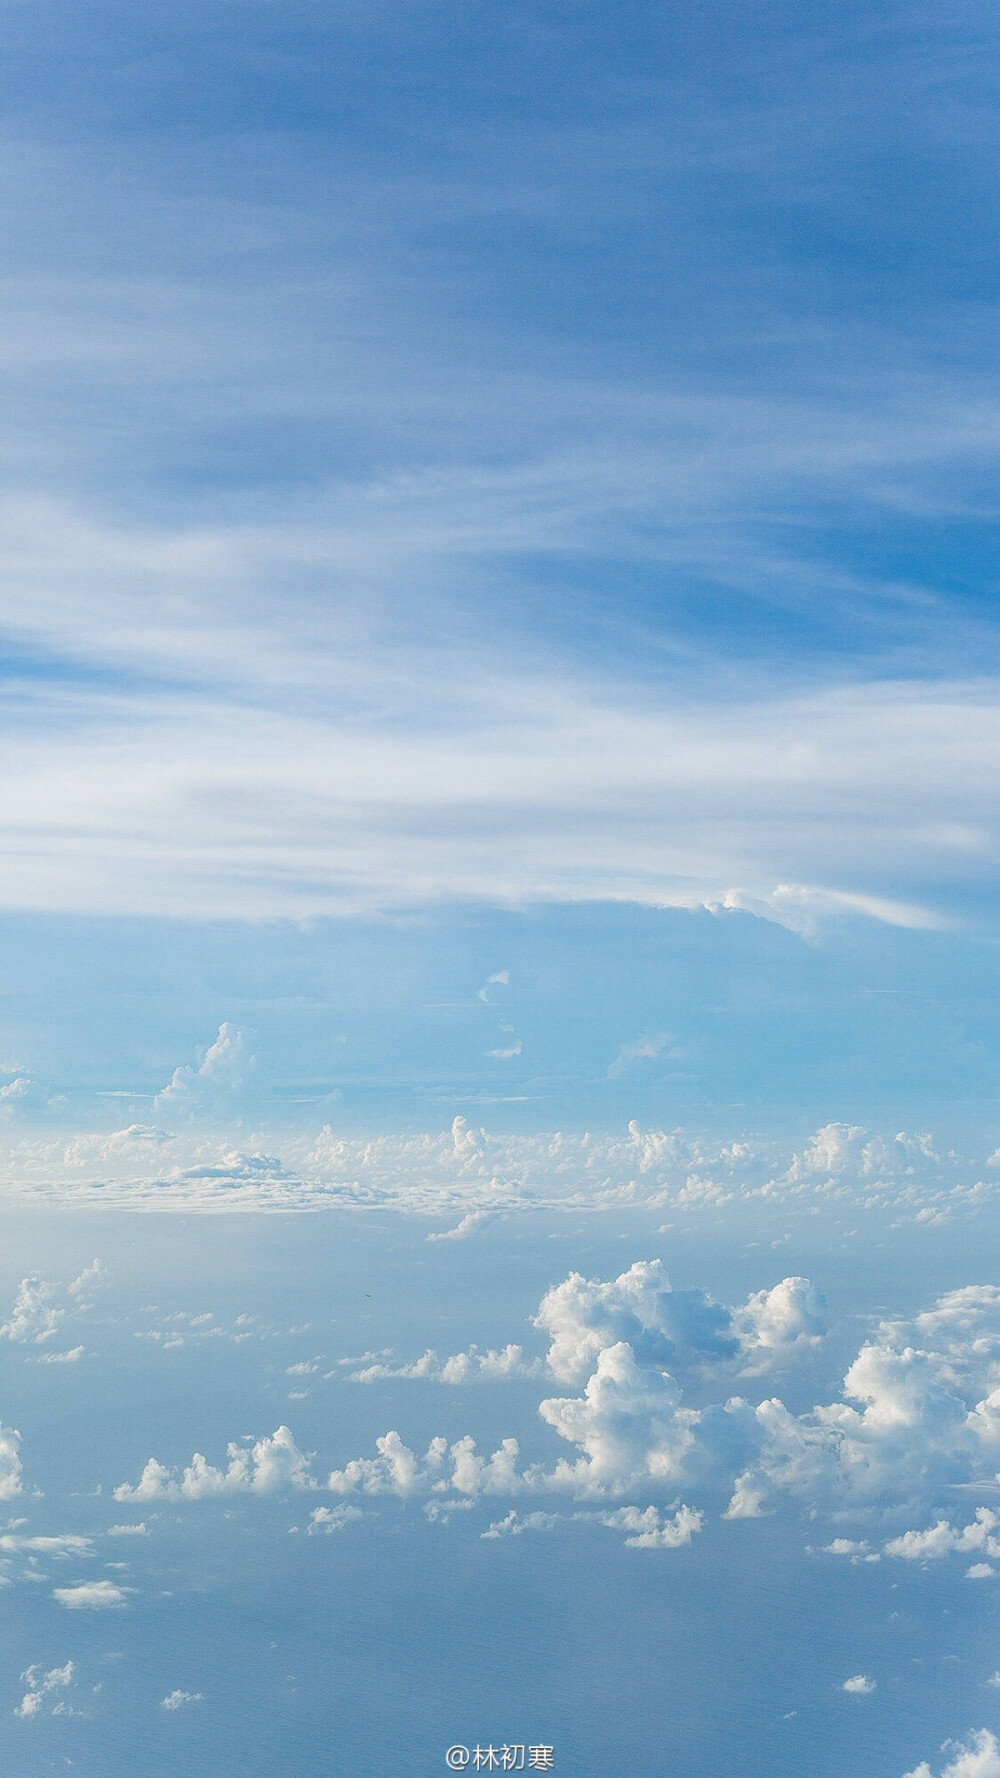 风景意象图 蓝天白云大海 手机壁纸摄影师林… 